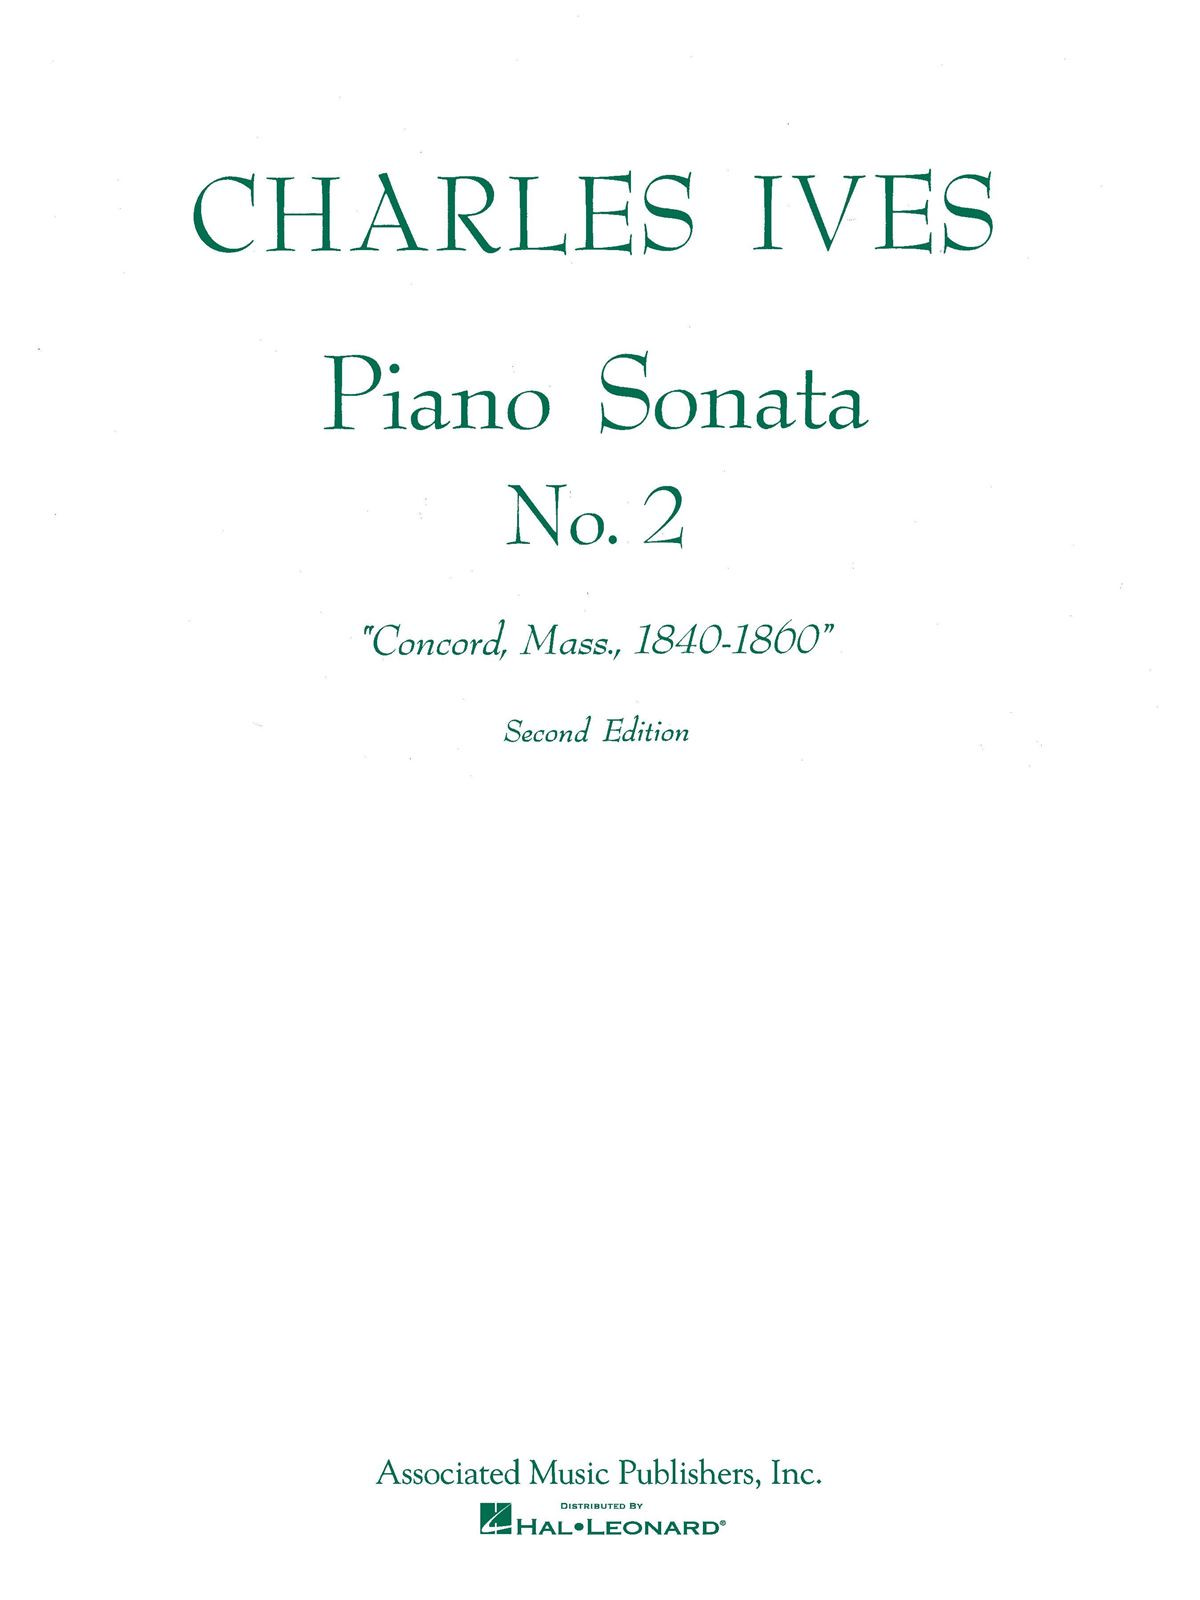 Piano Sonata No. 2 (2nd Ed.) "Concord, Mass 1840-60". 18653